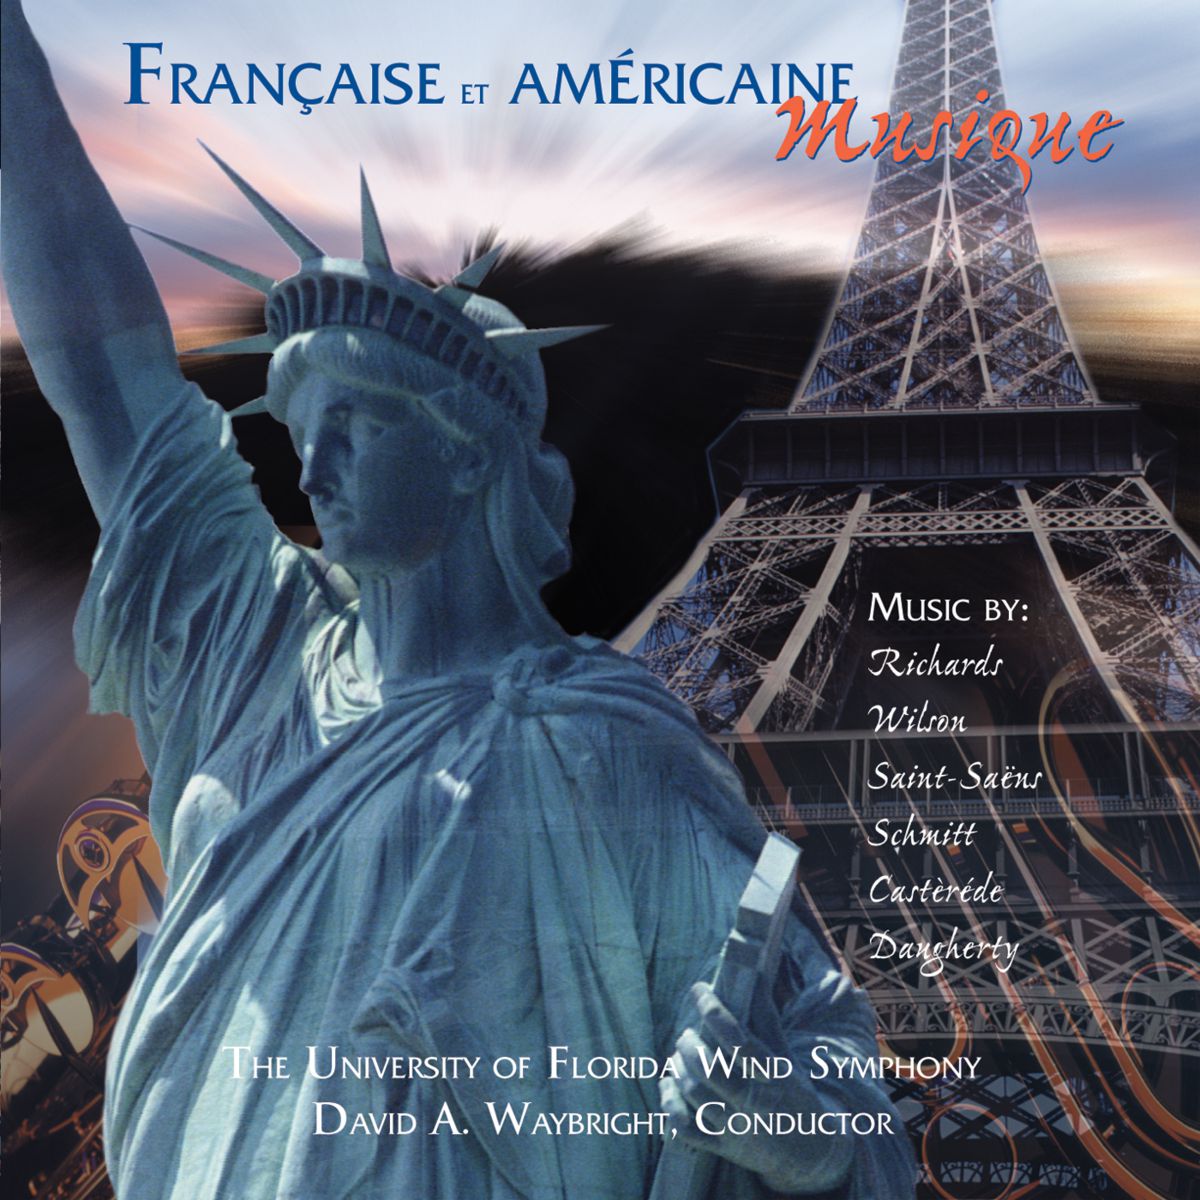 Franaise et Amricaine Musique - click here